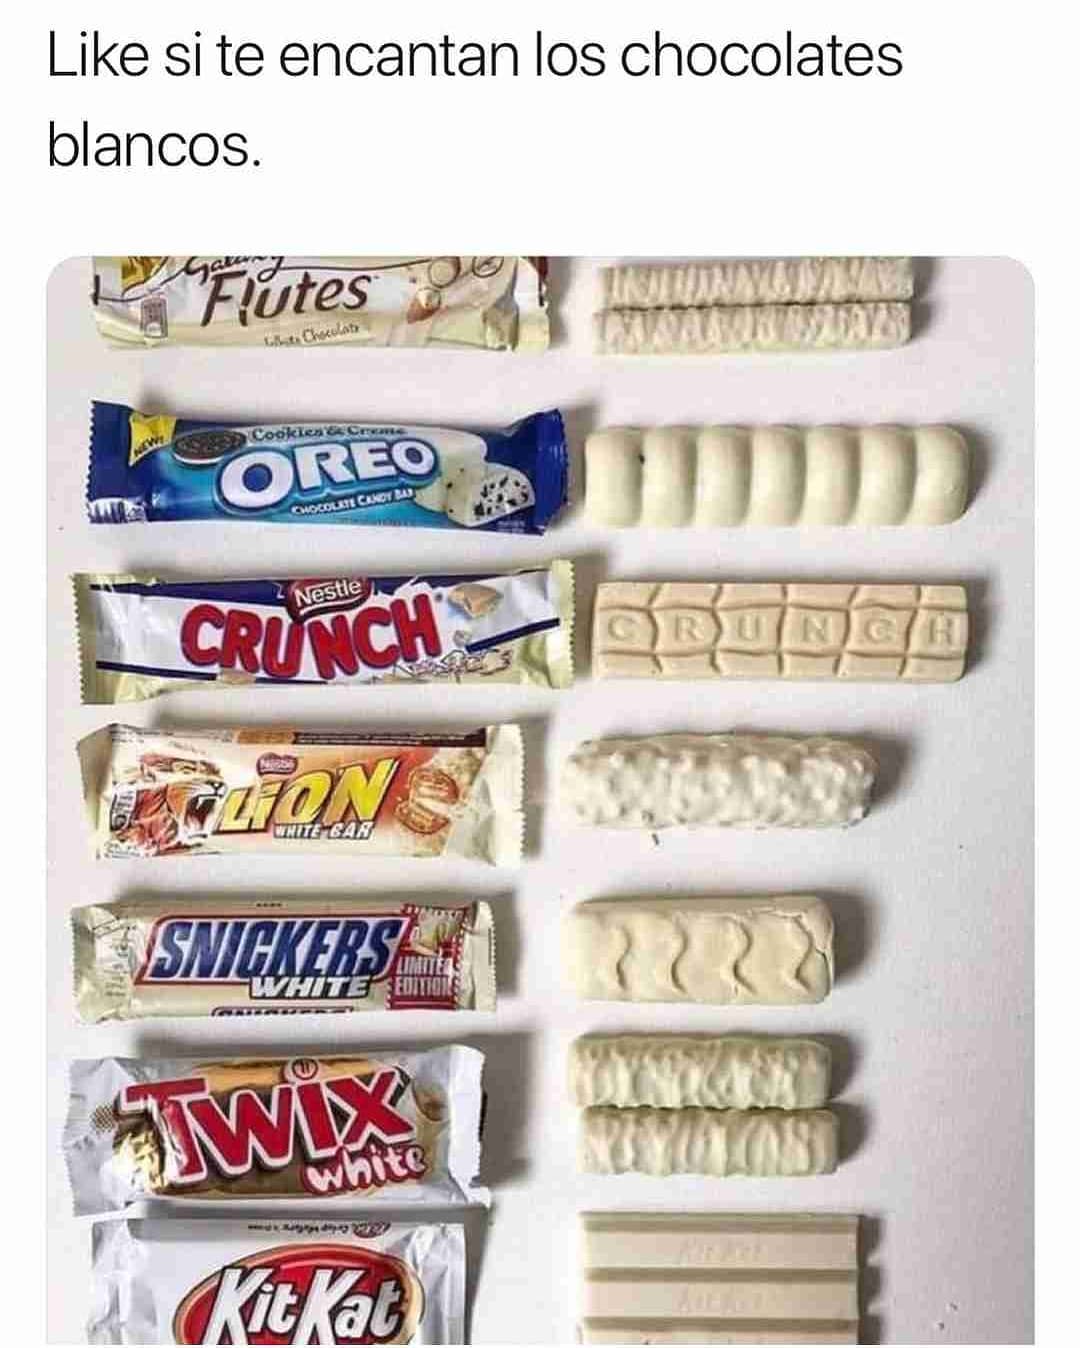 Like si te encantan los chocolates blancos.